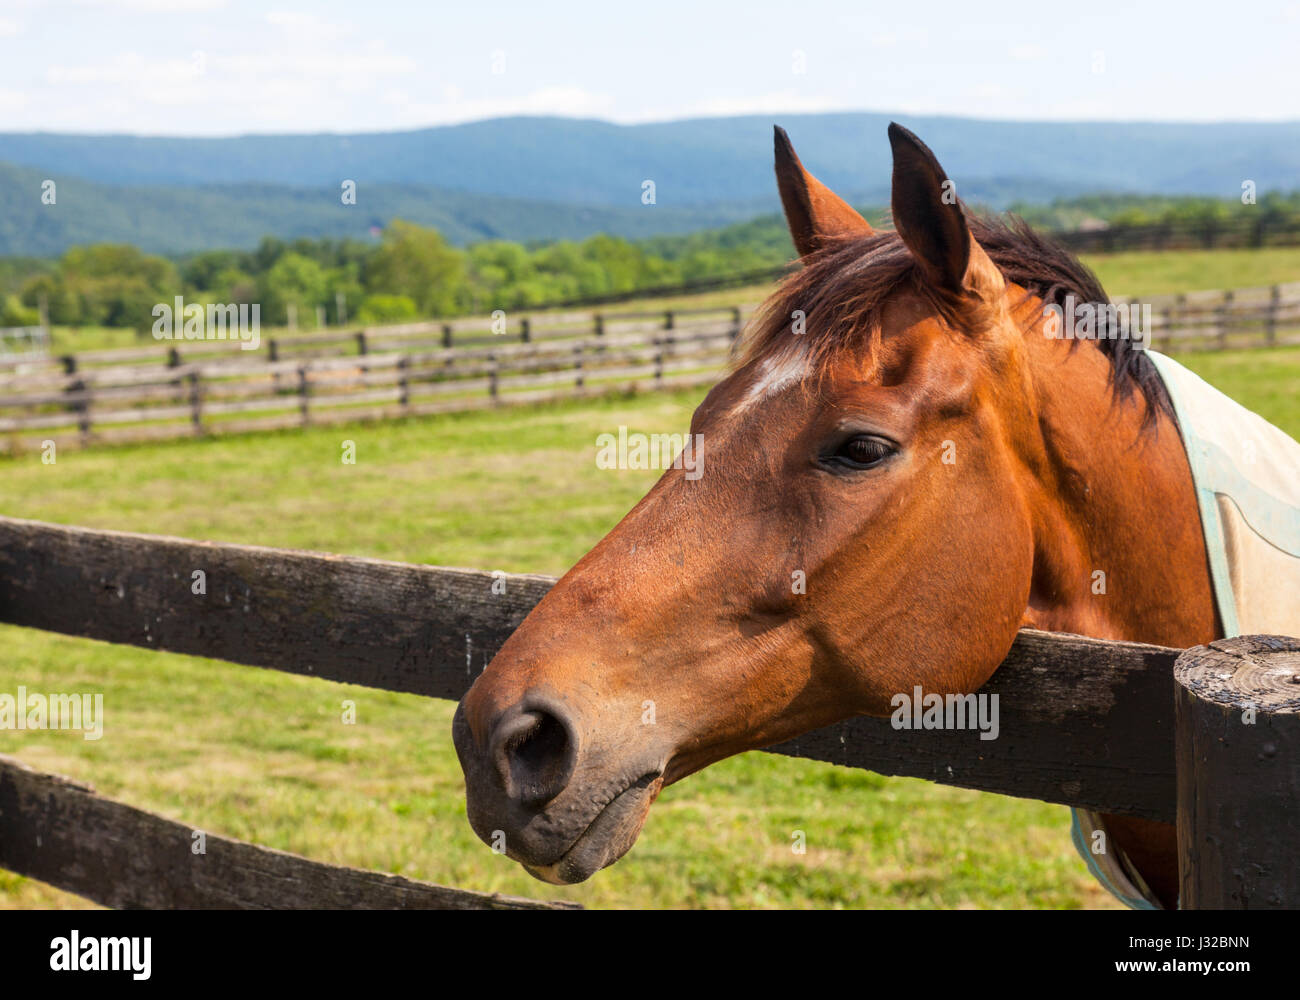 Kopf eines braunen Pferdes auf einer Wiese, stützte sich auf einen hölzernen Zaun mit Hügeln im Hintergrund Stockfoto